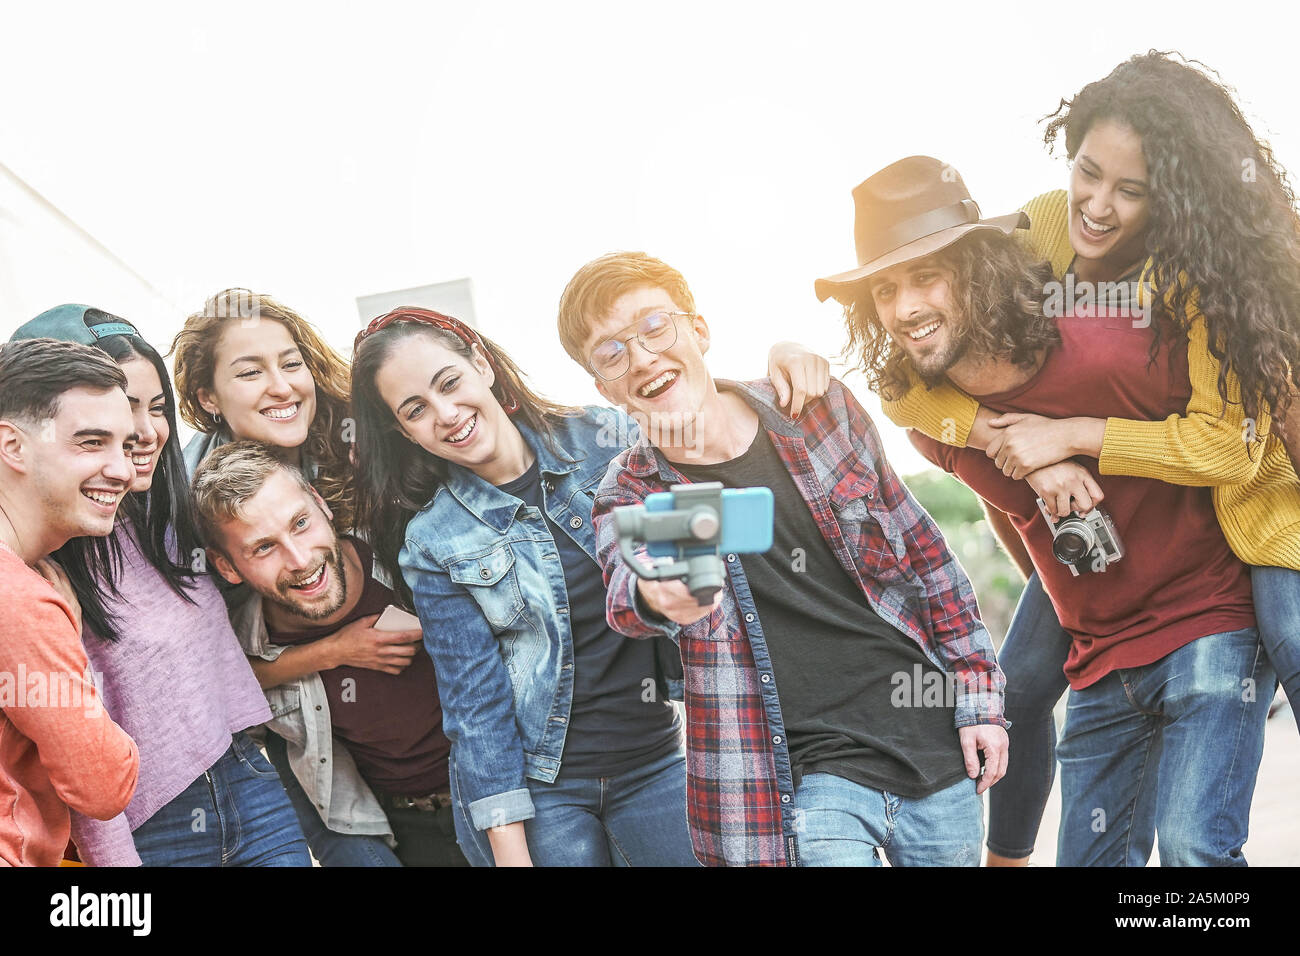 Gerne trendy Freunde Video mit Gimbal smartphone Kamera in die Stadt - der Tausendjährige Jugendlichen Spaß mit neuer Technologie für soziale Medien Stockfoto